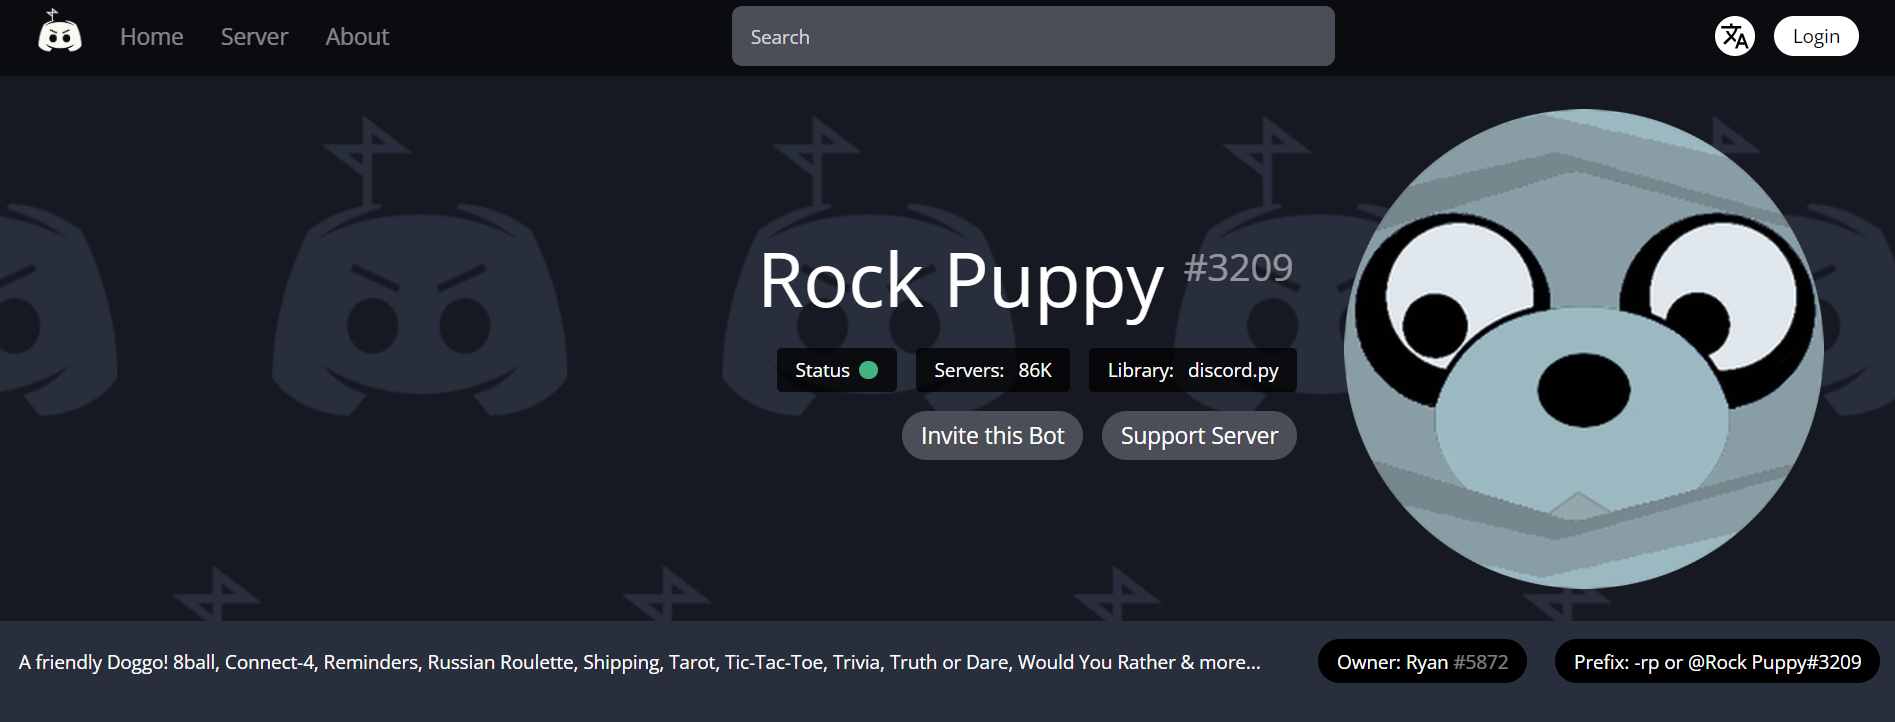 Rock Puppy